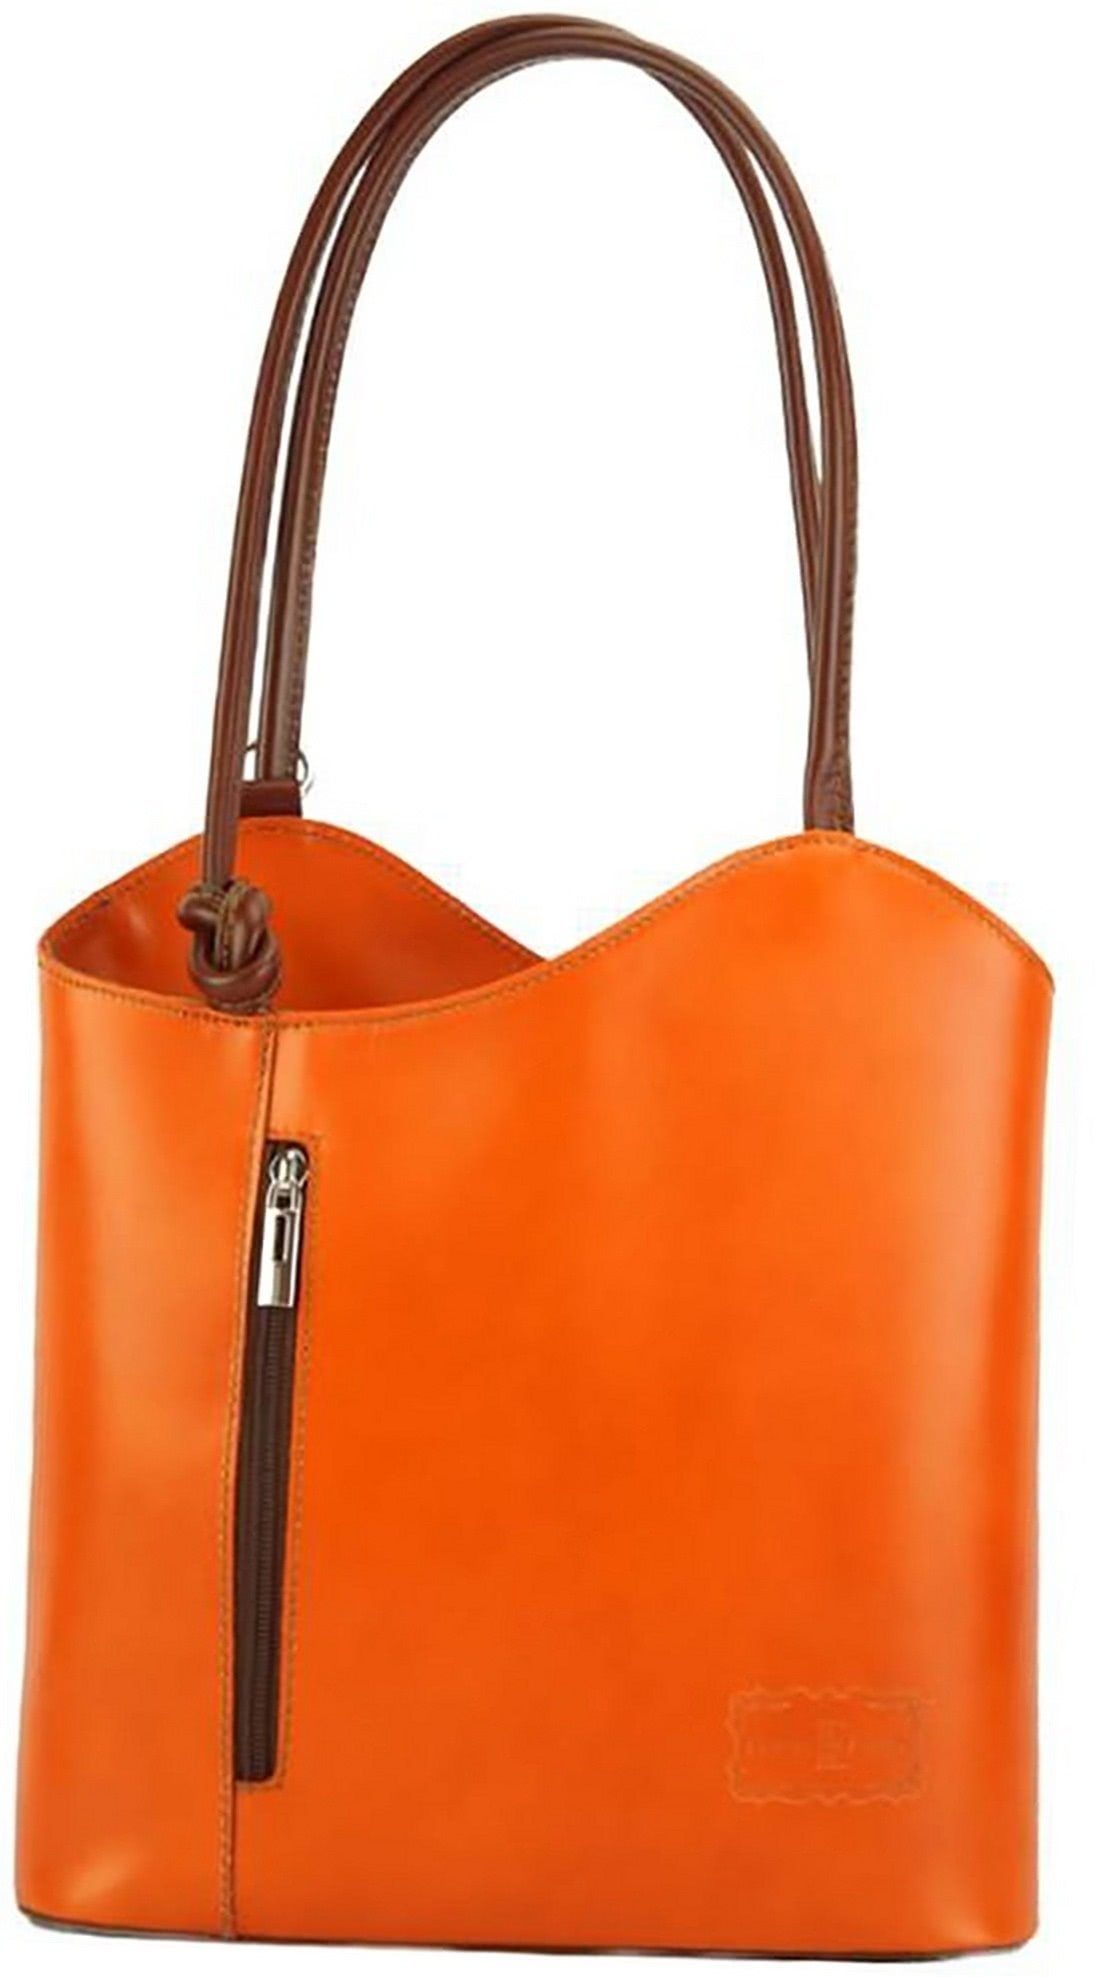 FLORENCE Schultertasche Florence 2in1 Echtleder Damen Handtasche (Schultertasche, Schultertasche), Damen Tasche Echtleder orange, braun, Made-In Italy